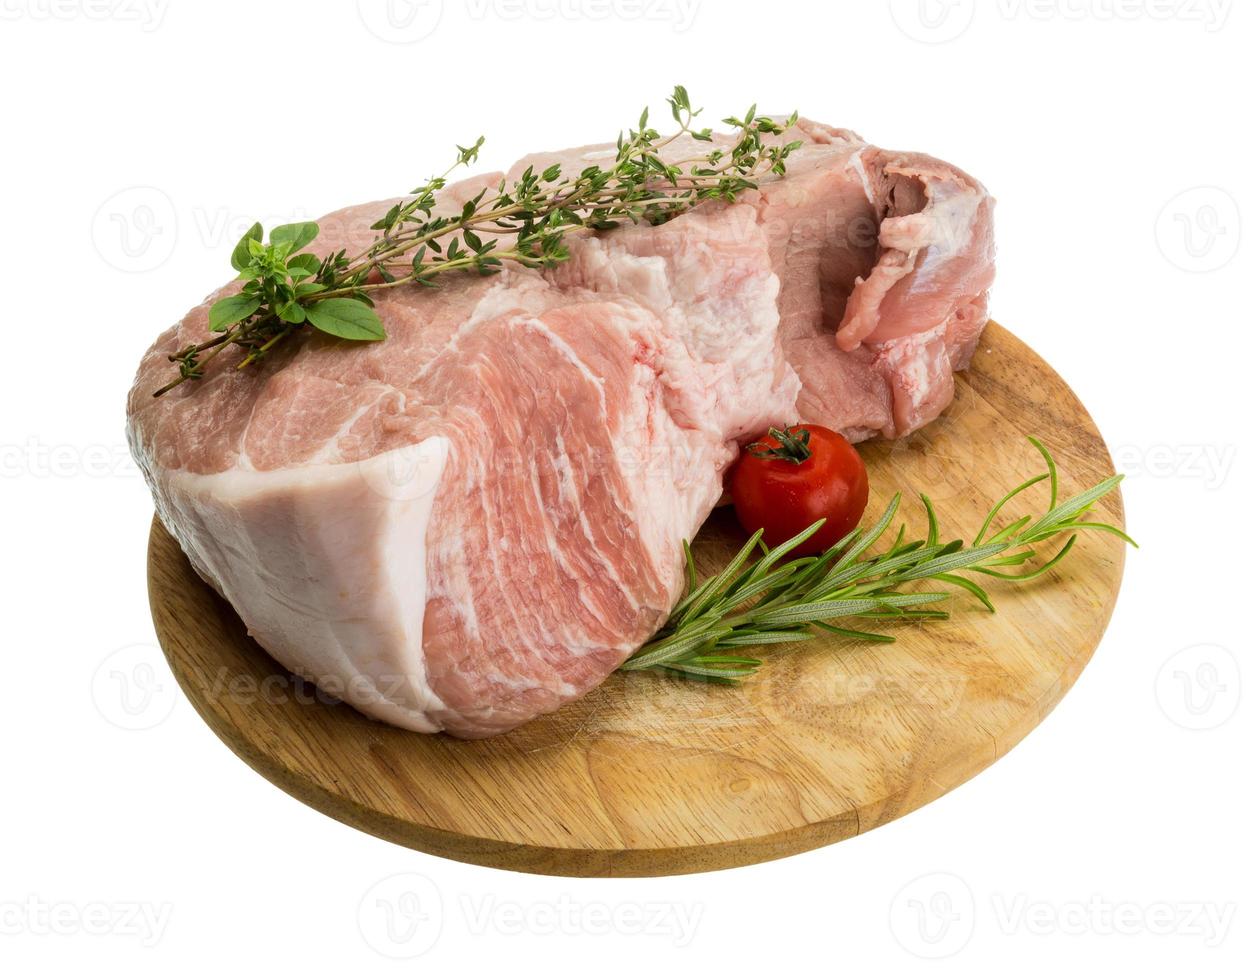 carne de porco crua na placa de madeira e fundo branco foto